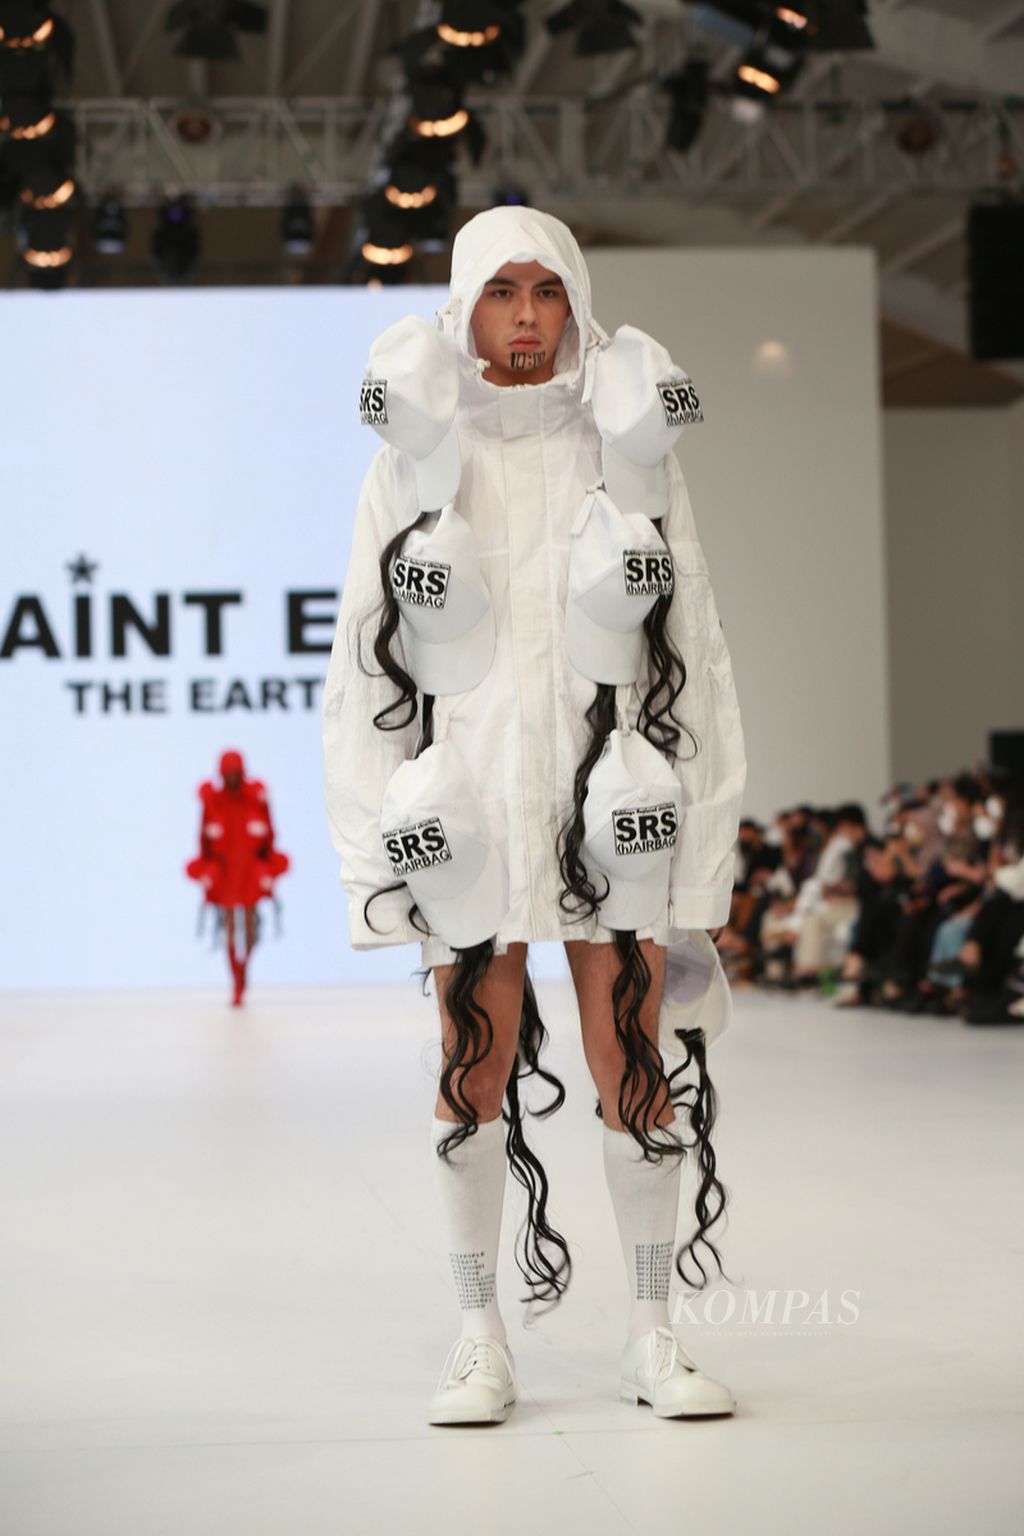 Koleksi Saint Ego yang bertema My Universe yang tampil di Jakarta Fashion Week, pada Oktober 2022. 